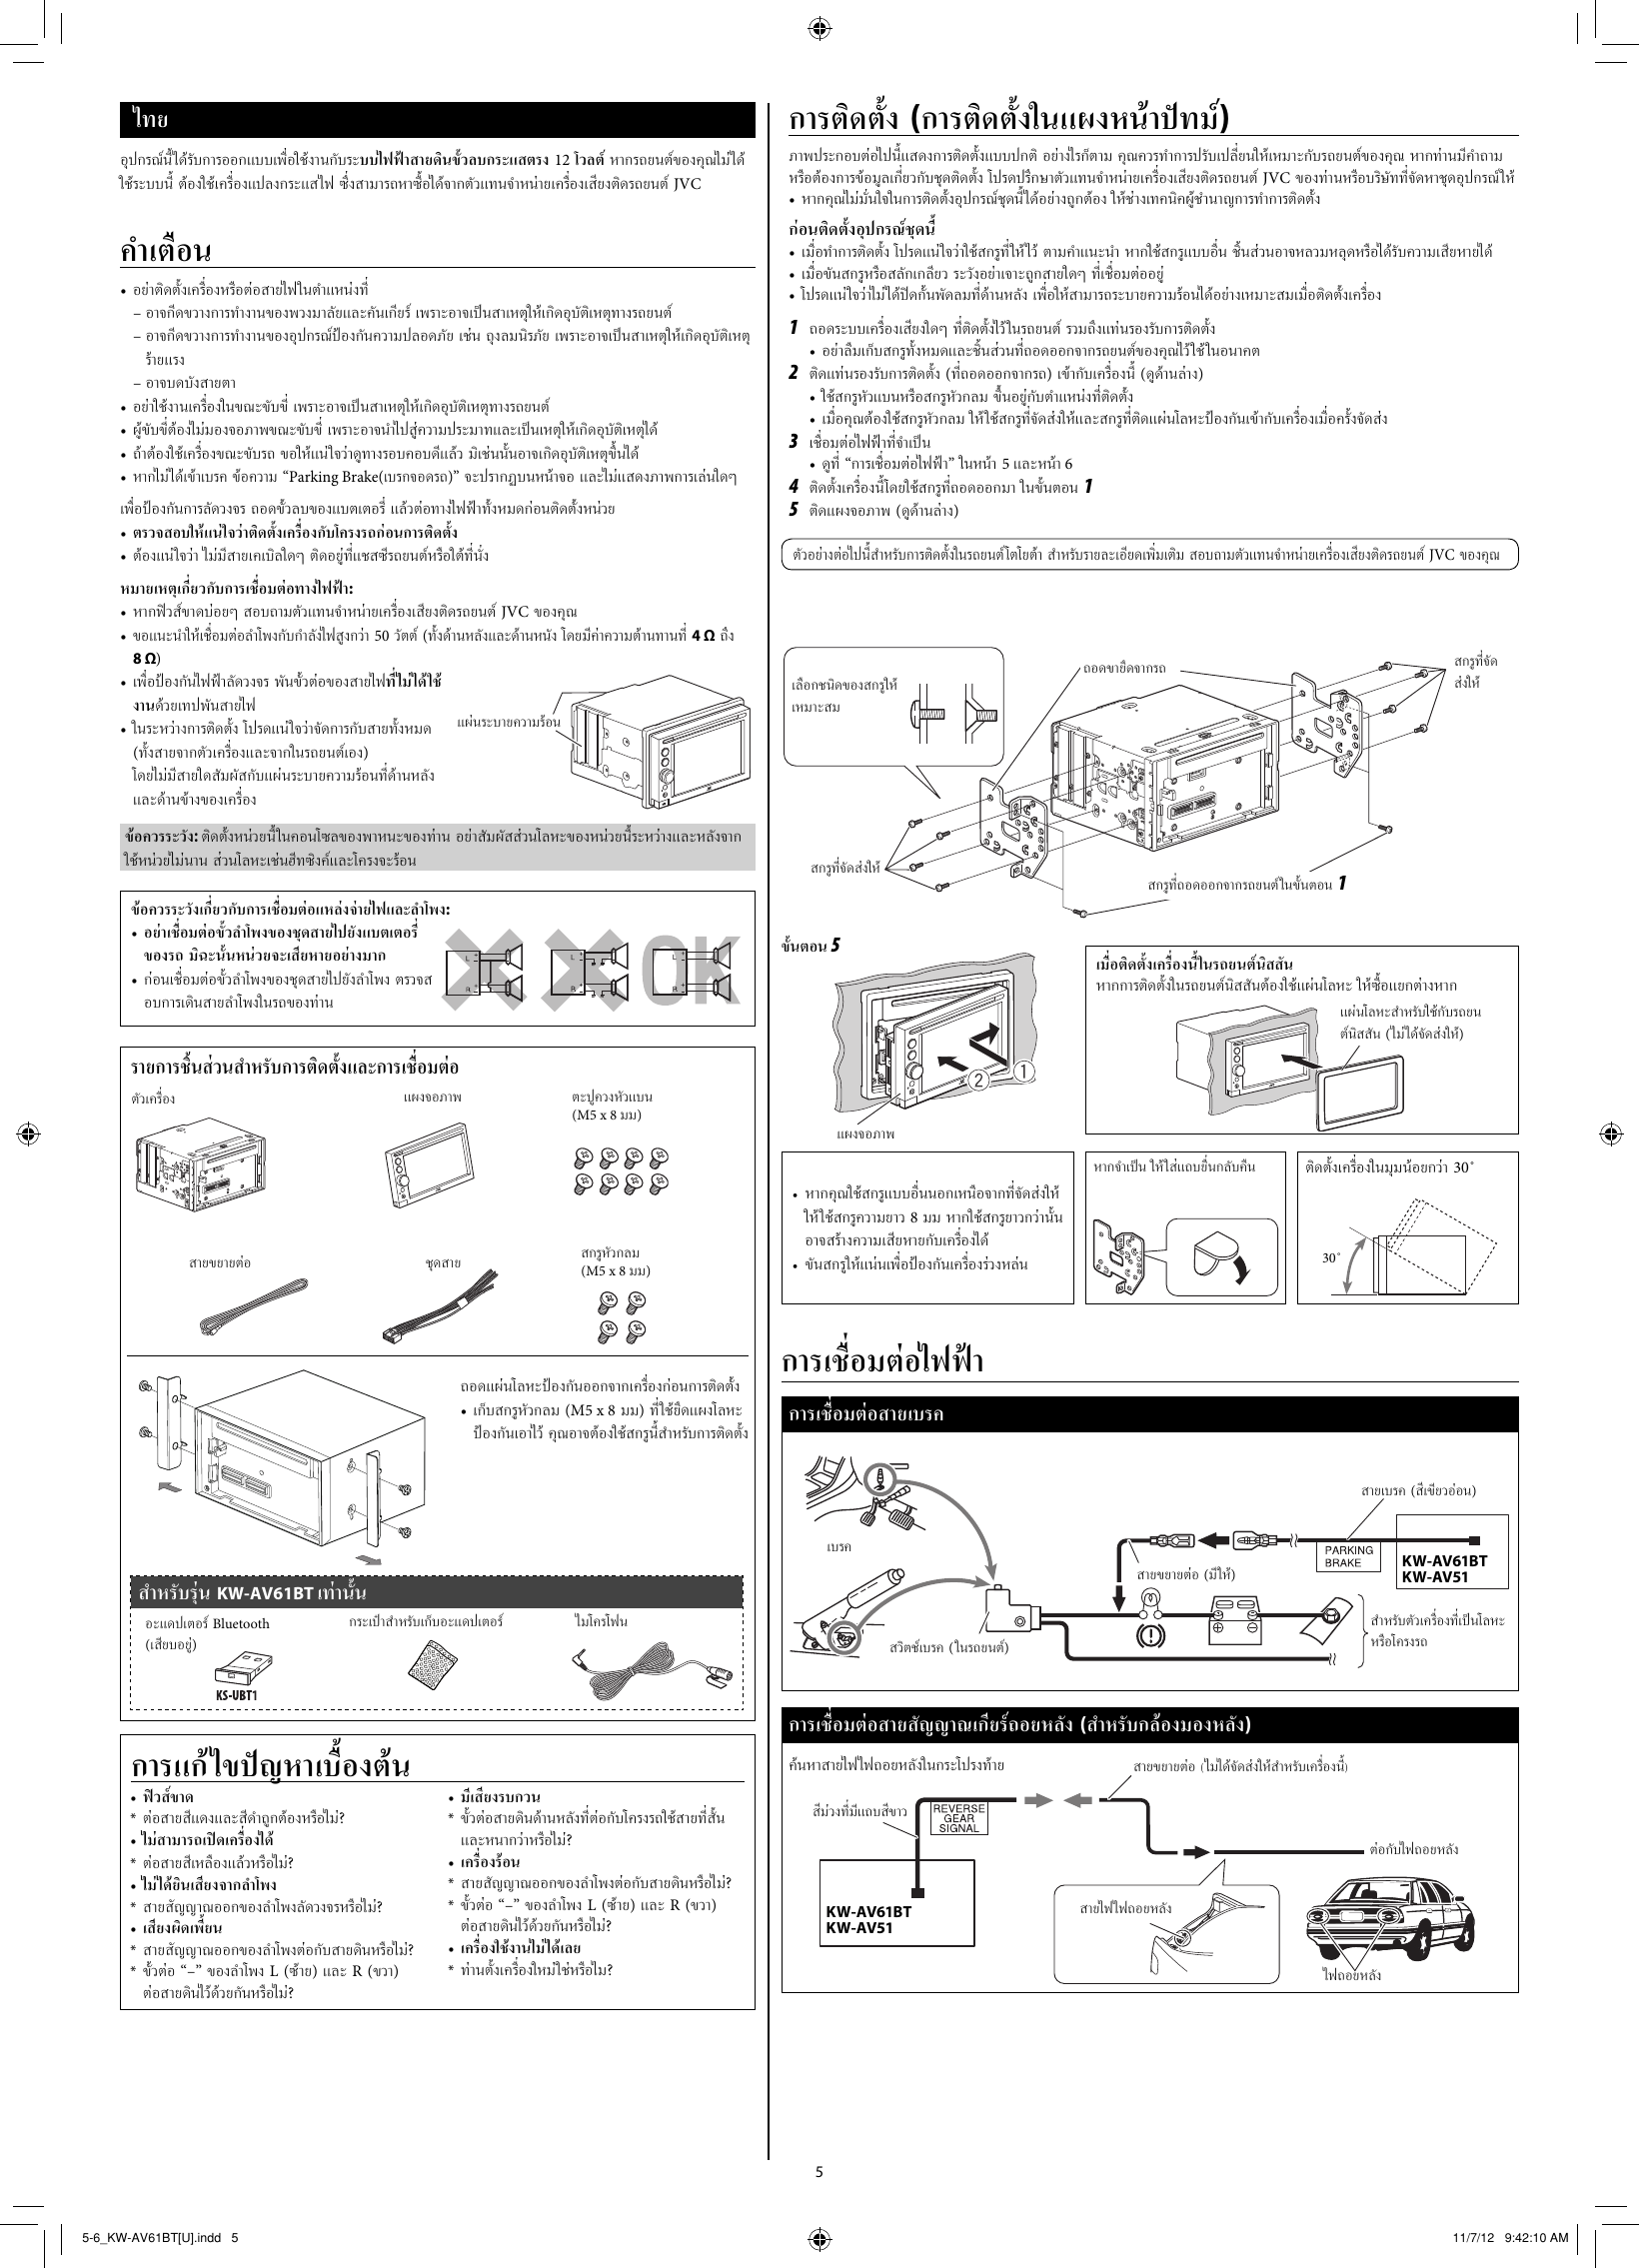 Page 5 of 6 - JVC KW-AV51U KW-AV61BT/KW-AV51[U] User Manual KW-AV51U, KW-AV61BTU GET0888-002A